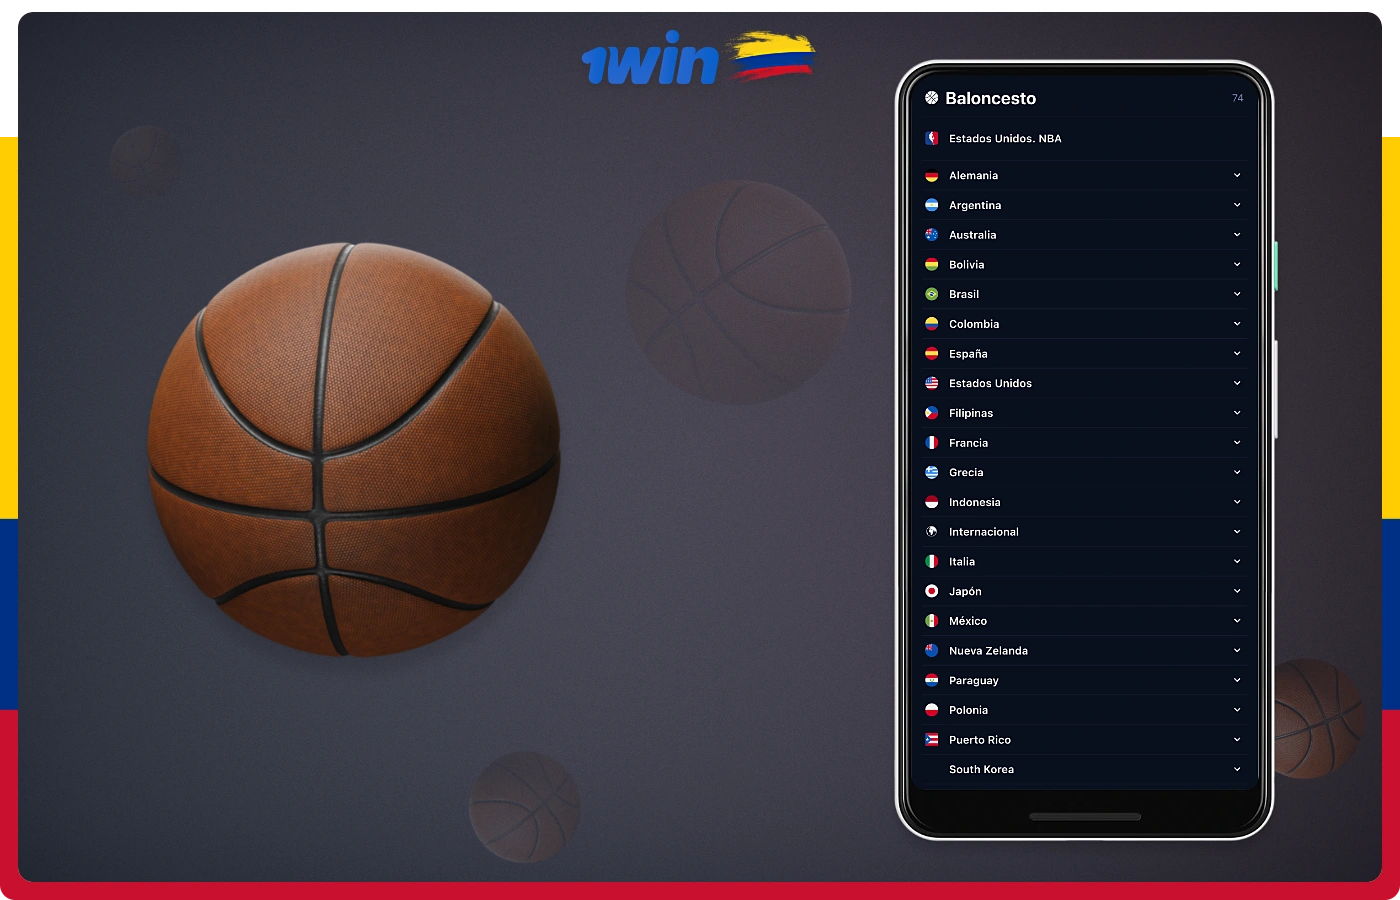 Las apuestas de baloncesto están disponibles para los usuarios colombianos en 1win, incluidas las apuestas en torneos populares